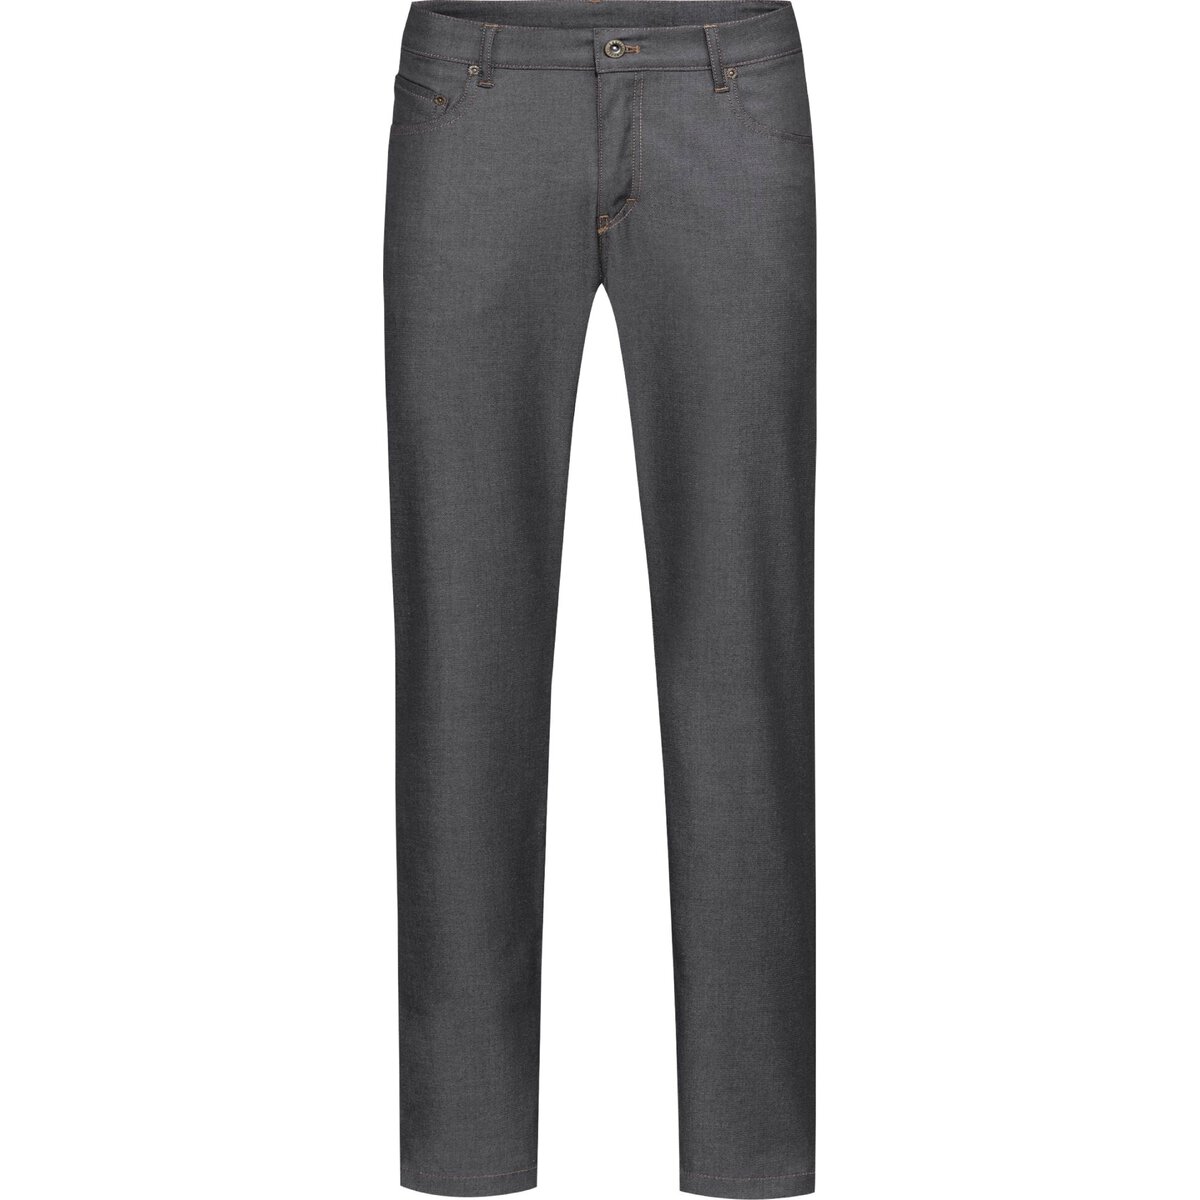 Herren Kochhose Jeans Style Größe 44 (1)